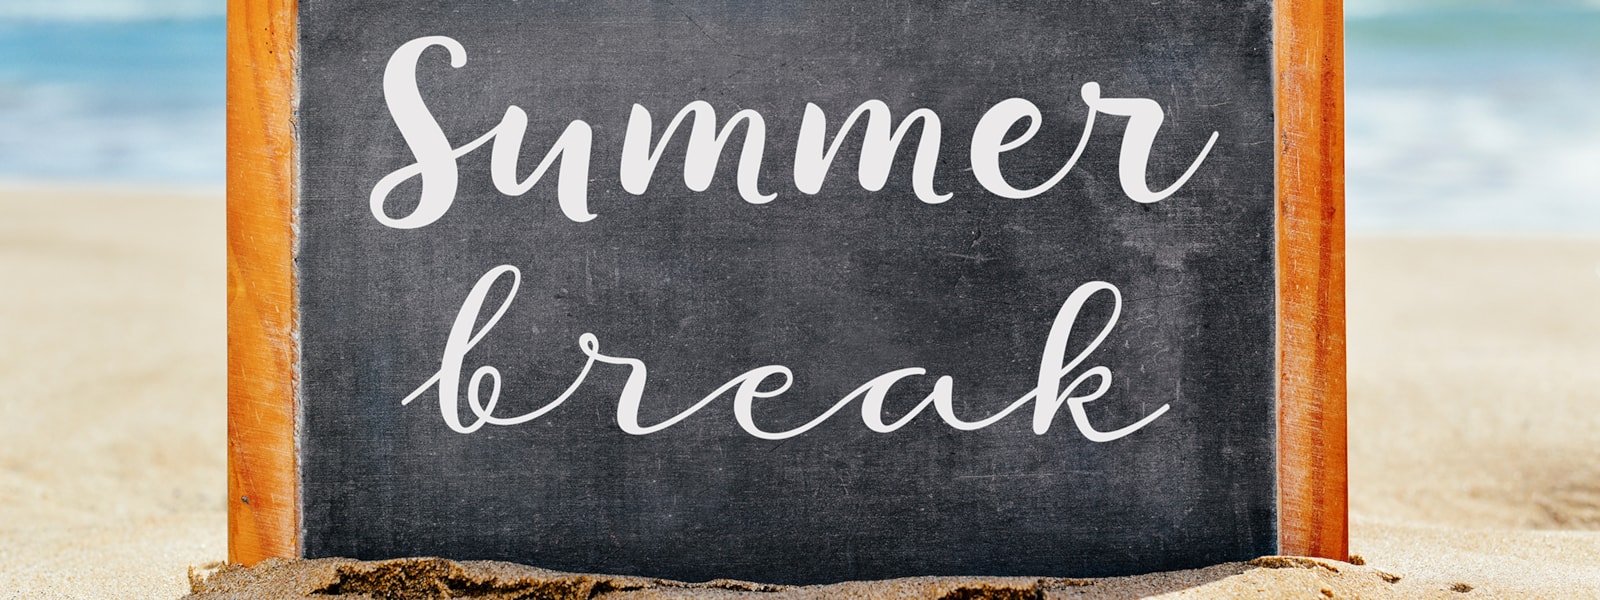 chalkboard saying 'Summer break' on beach